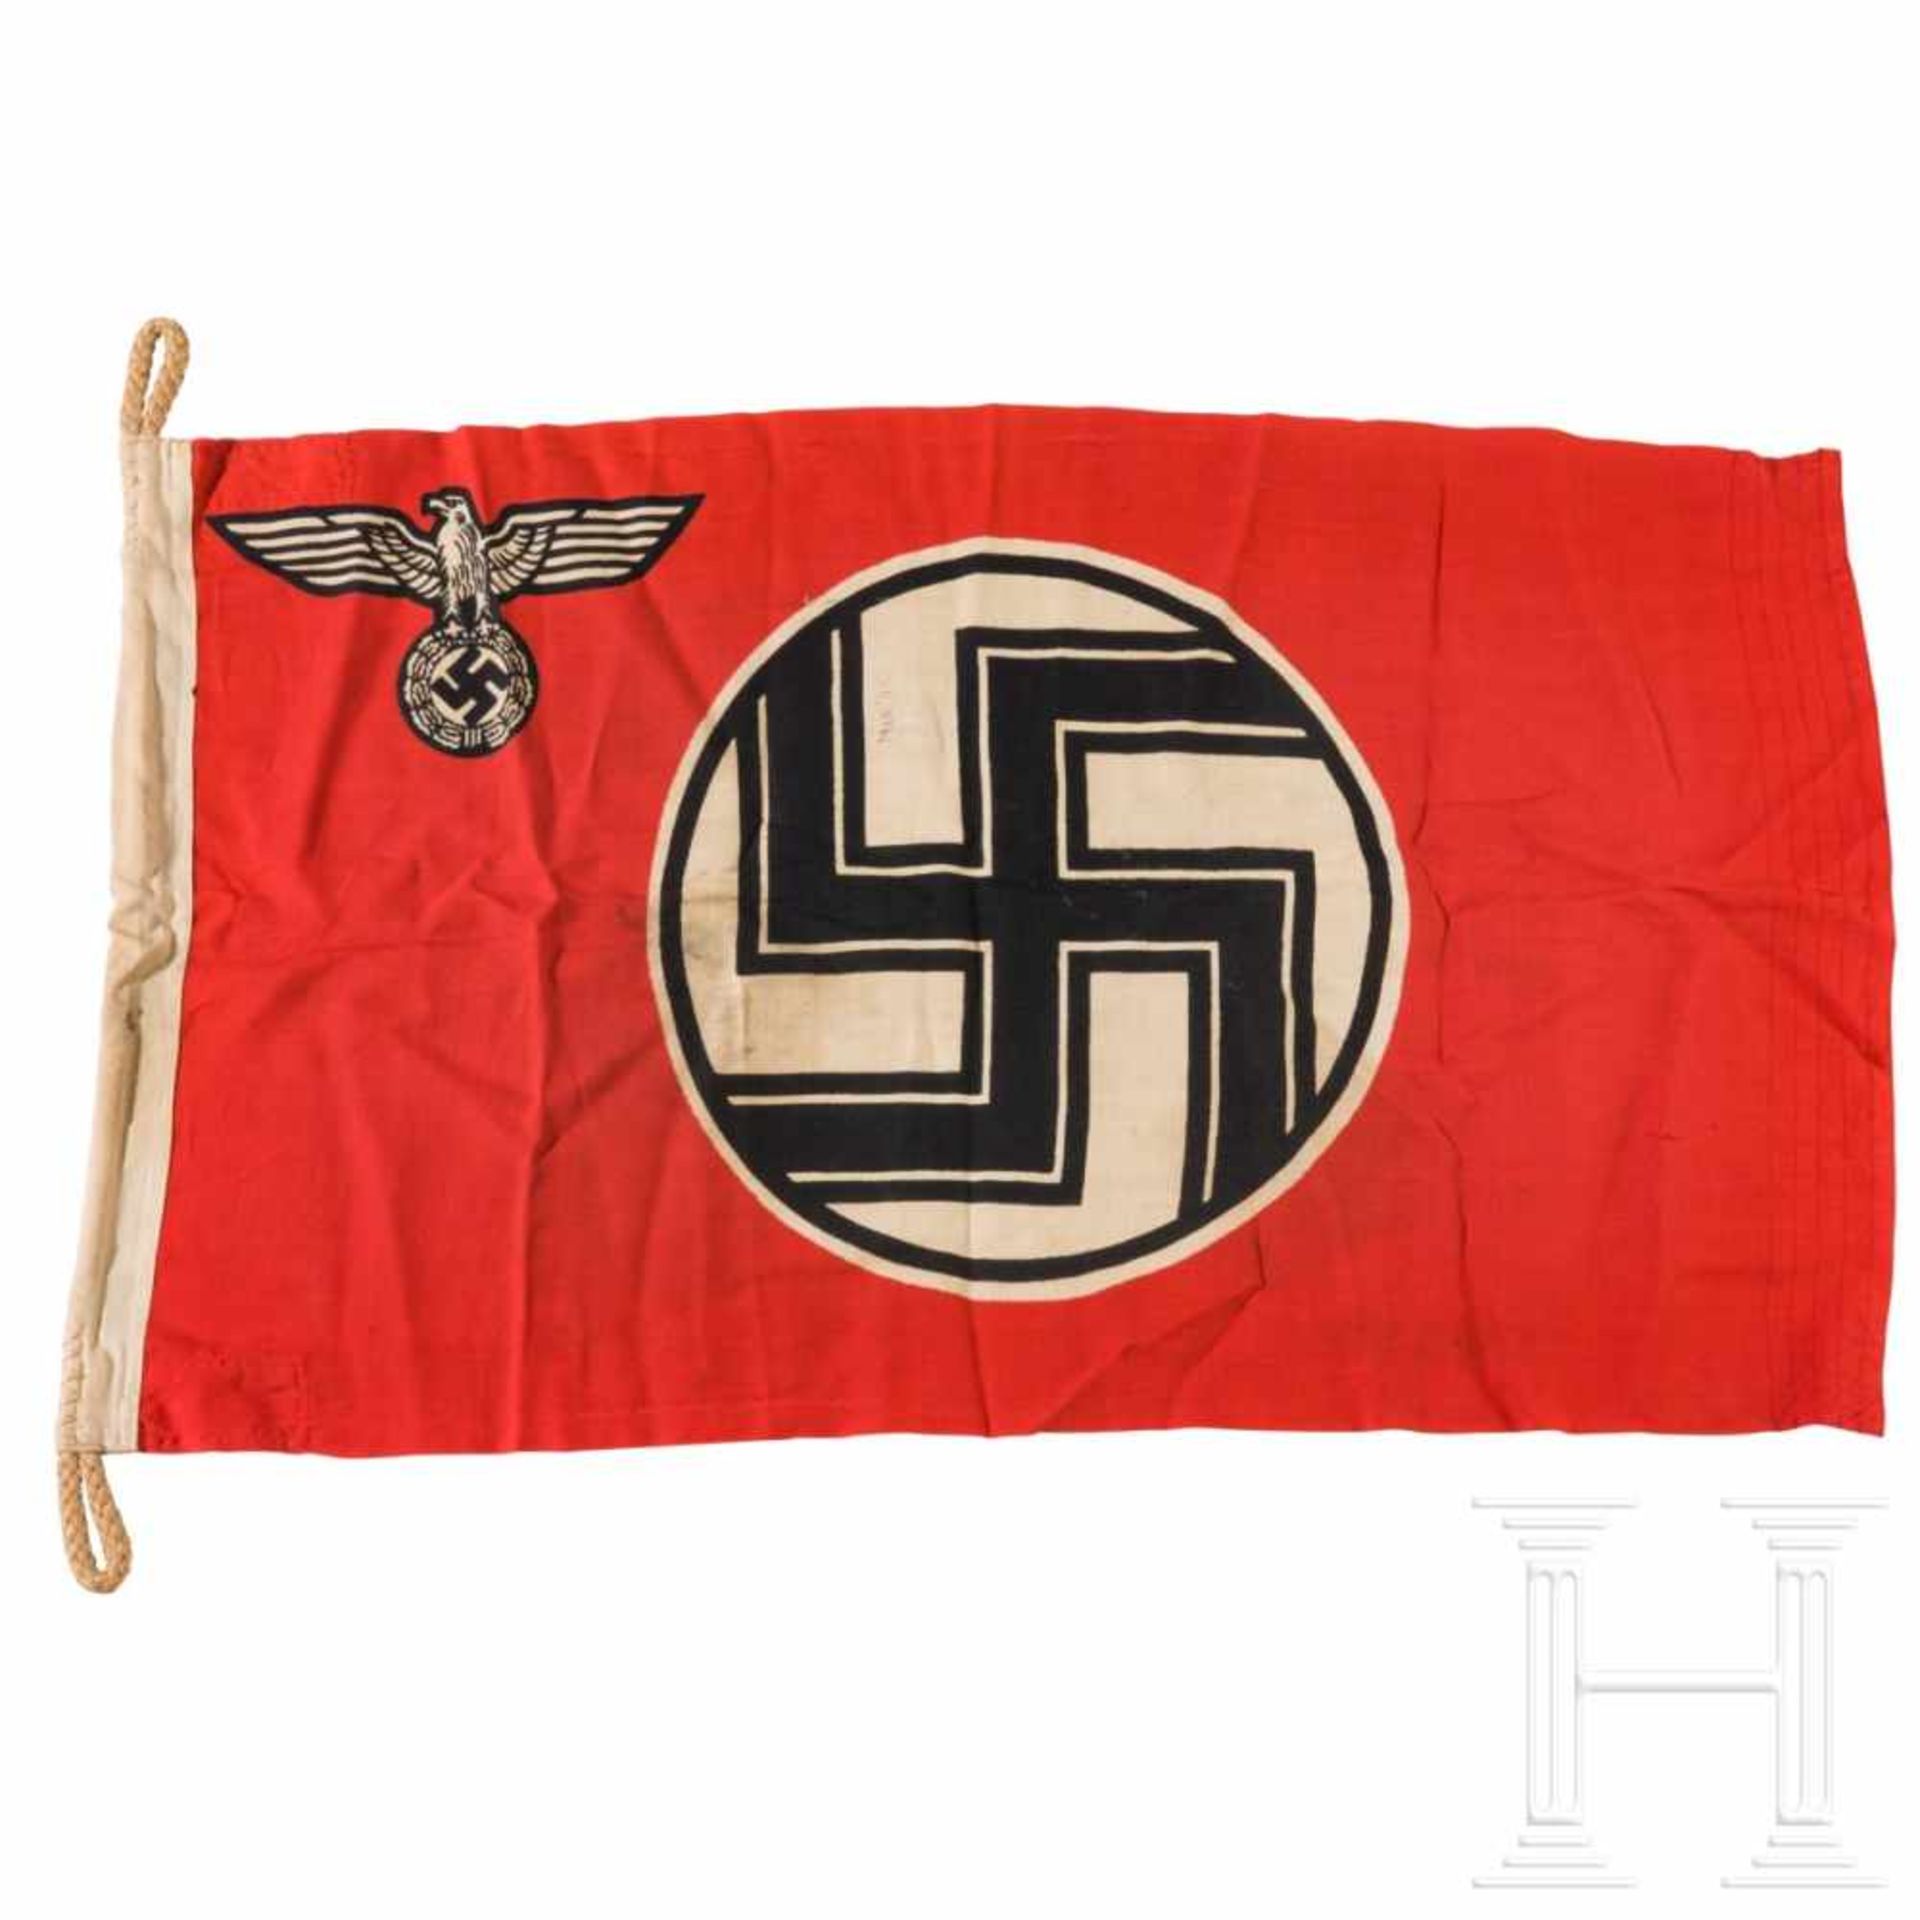 Reichsdienstflagge mit Herstellerstempelung und Abnahmestempel der Kriegsmarine